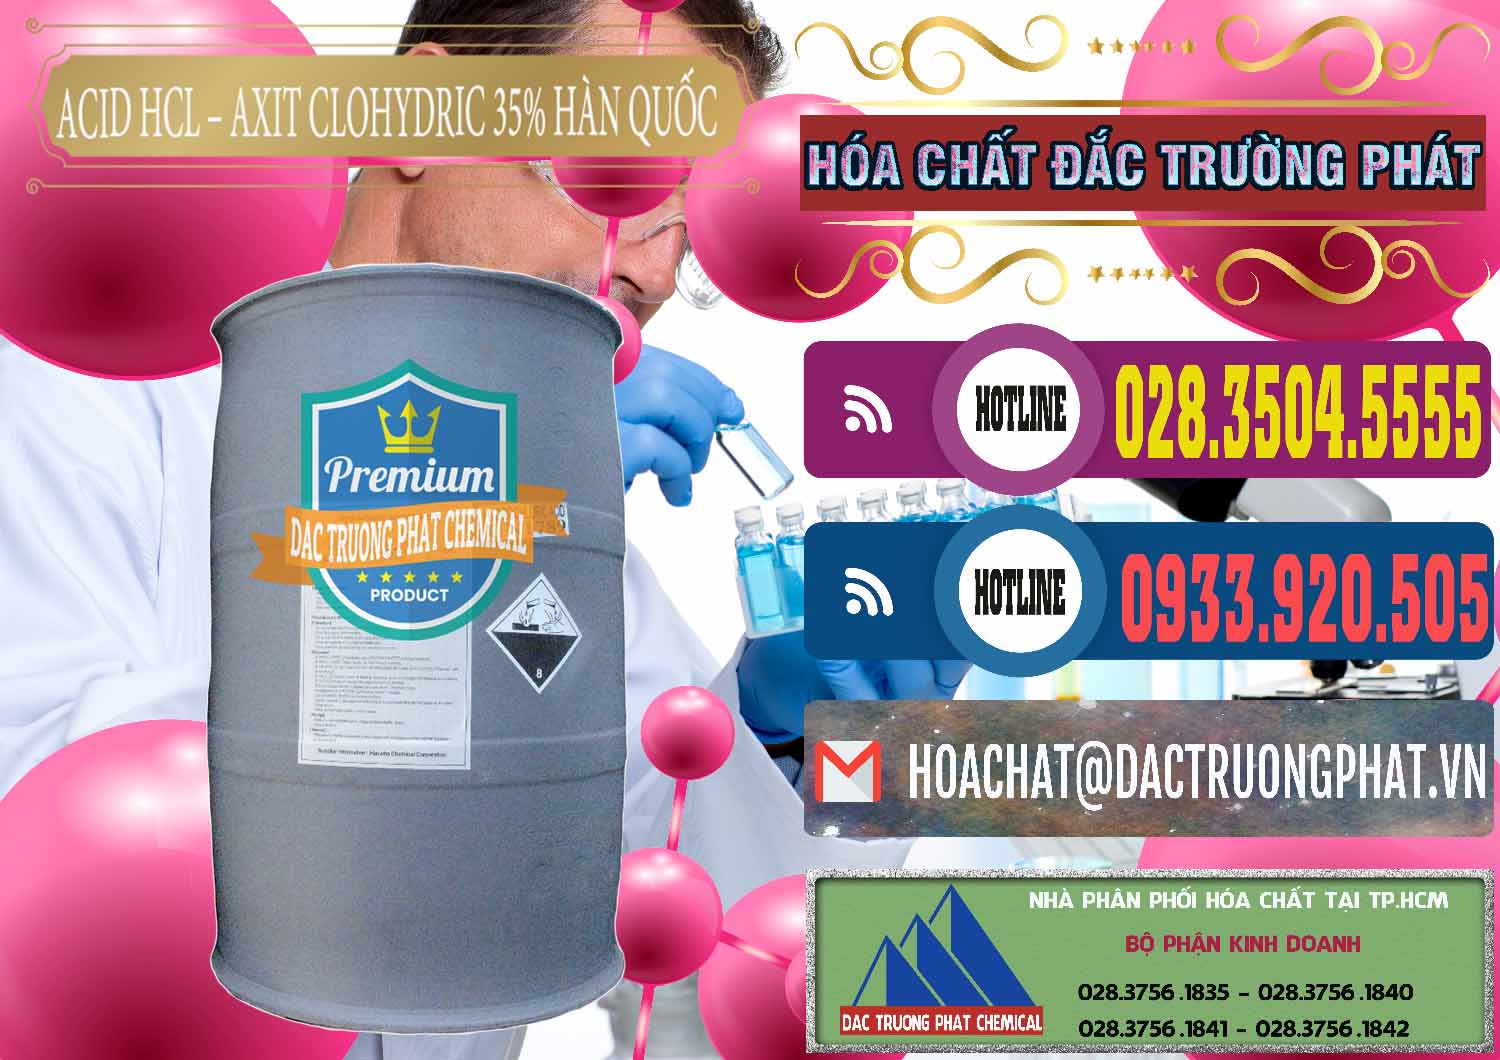 Chuyên kinh doanh và bán Acid HCL - Axit Cohidric 35% Hàn Quốc Korea - 0011 - Nơi phân phối & cung cấp hóa chất tại TP.HCM - muabanhoachat.com.vn